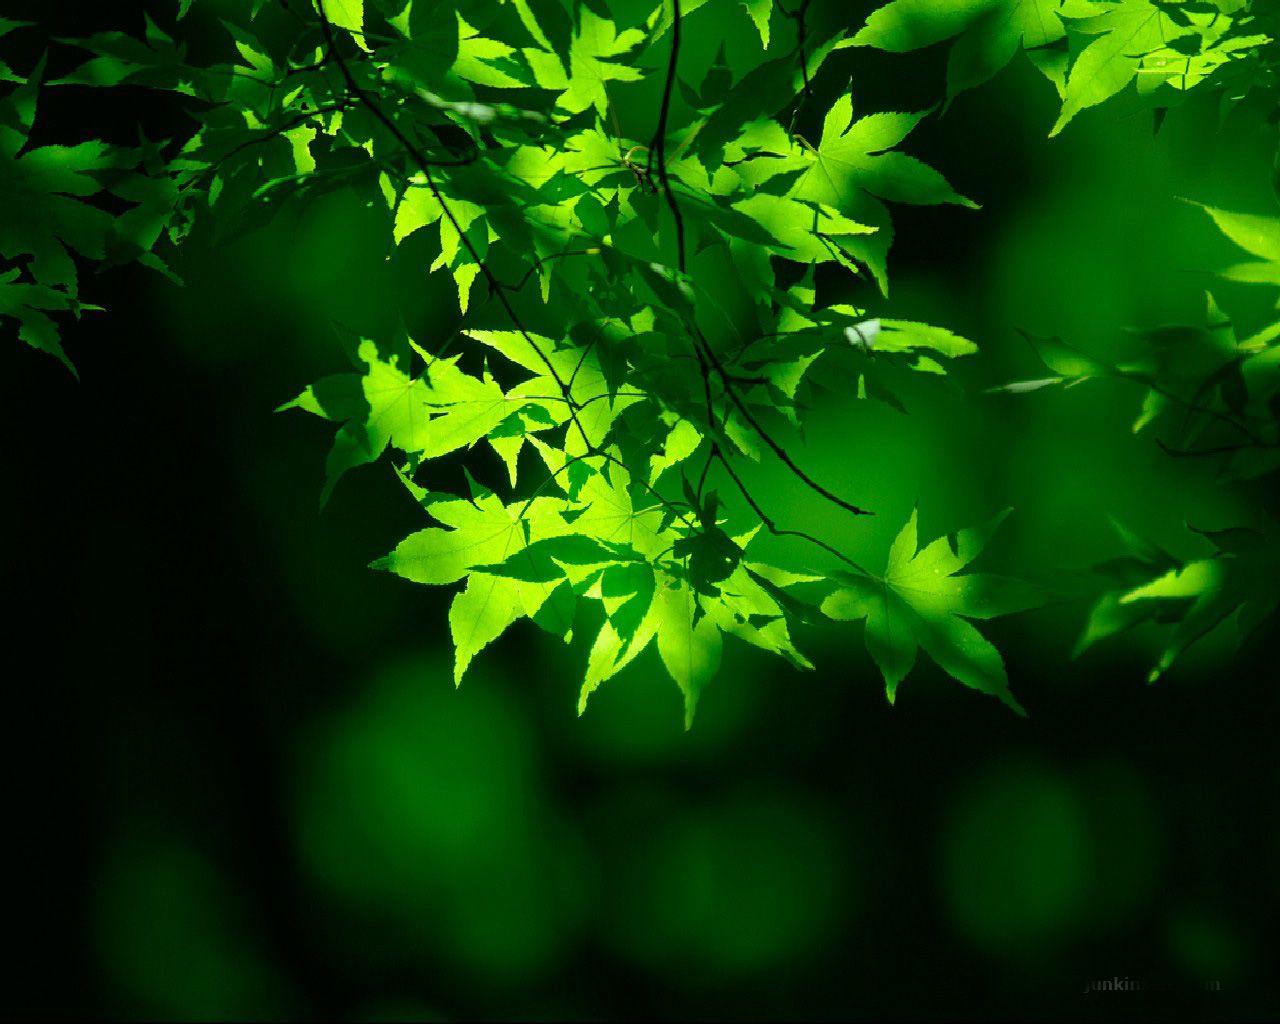 1280x1024 Loại hình nền: Hình nền màu xanh lá cây tự nhiên